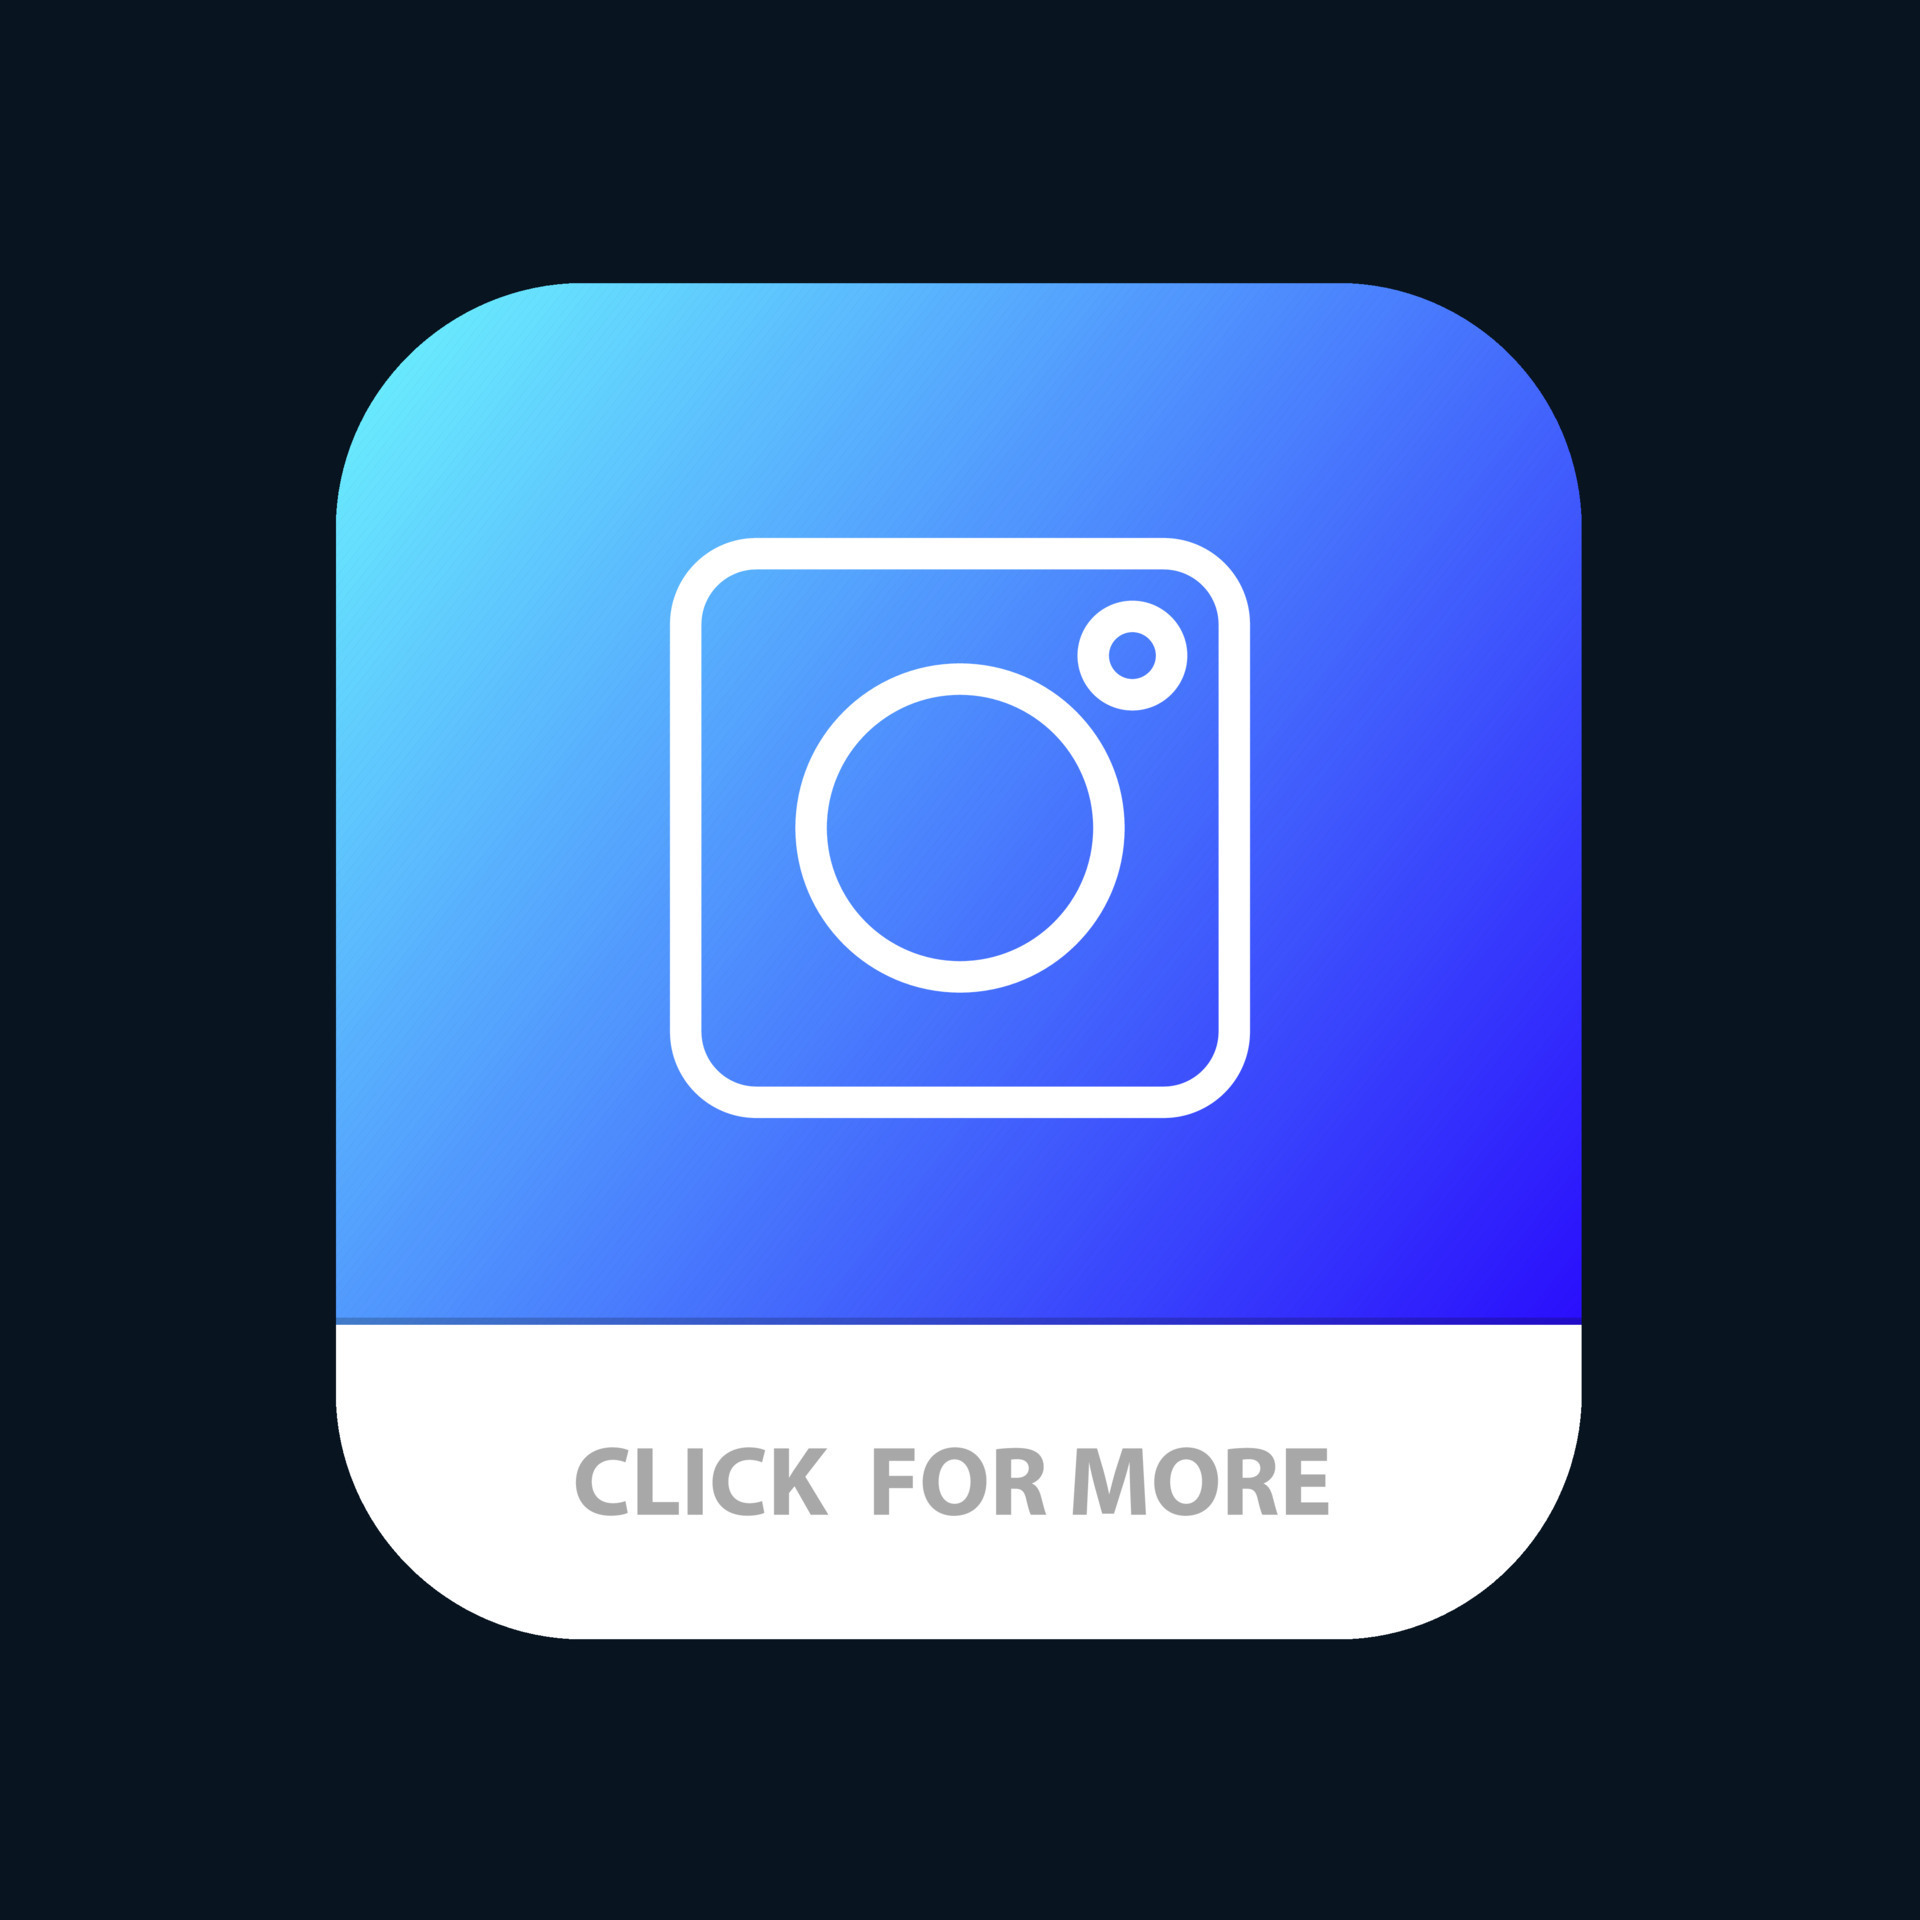 Với ứng dụng Instagram cho Android và IOS, bạn có thể chia sẻ và khám phá những khoảnh khắc đáng nhớ của cuộc sống một cách dễ dàng, đơn giản và tinh tế. Hãy tải ứng dụng và khám phá đồng thời hàng triệu ảnh và video đẹp mắt từ cộng đồng trên toàn thế giới.